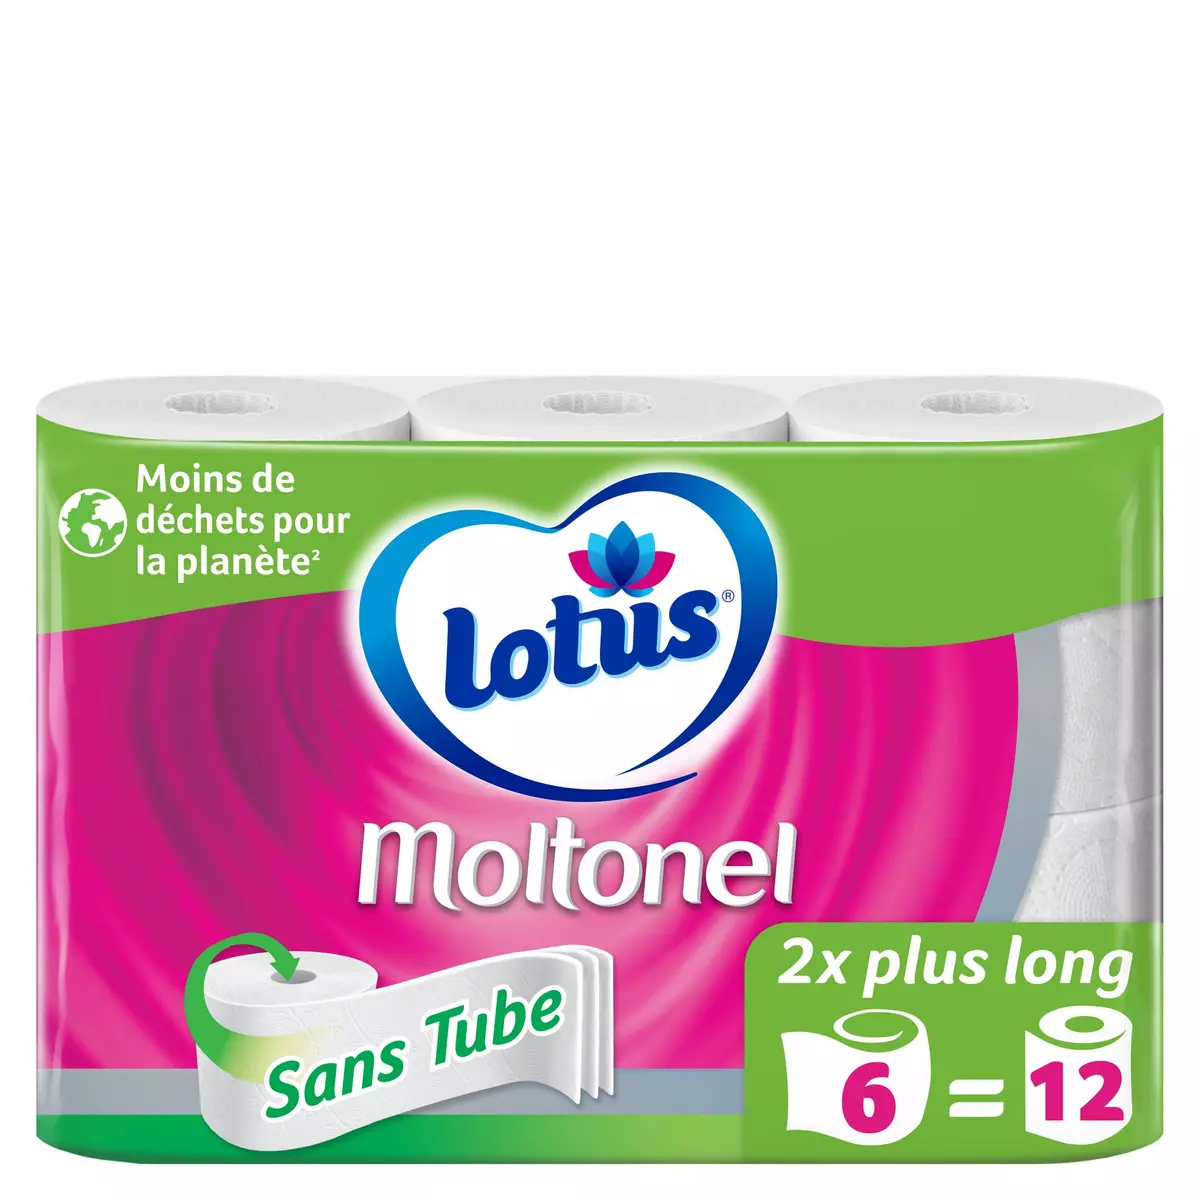 LOTUS Moltonel papier toilette blanc sans tube =12 rouleaux standards 6 rouleaux